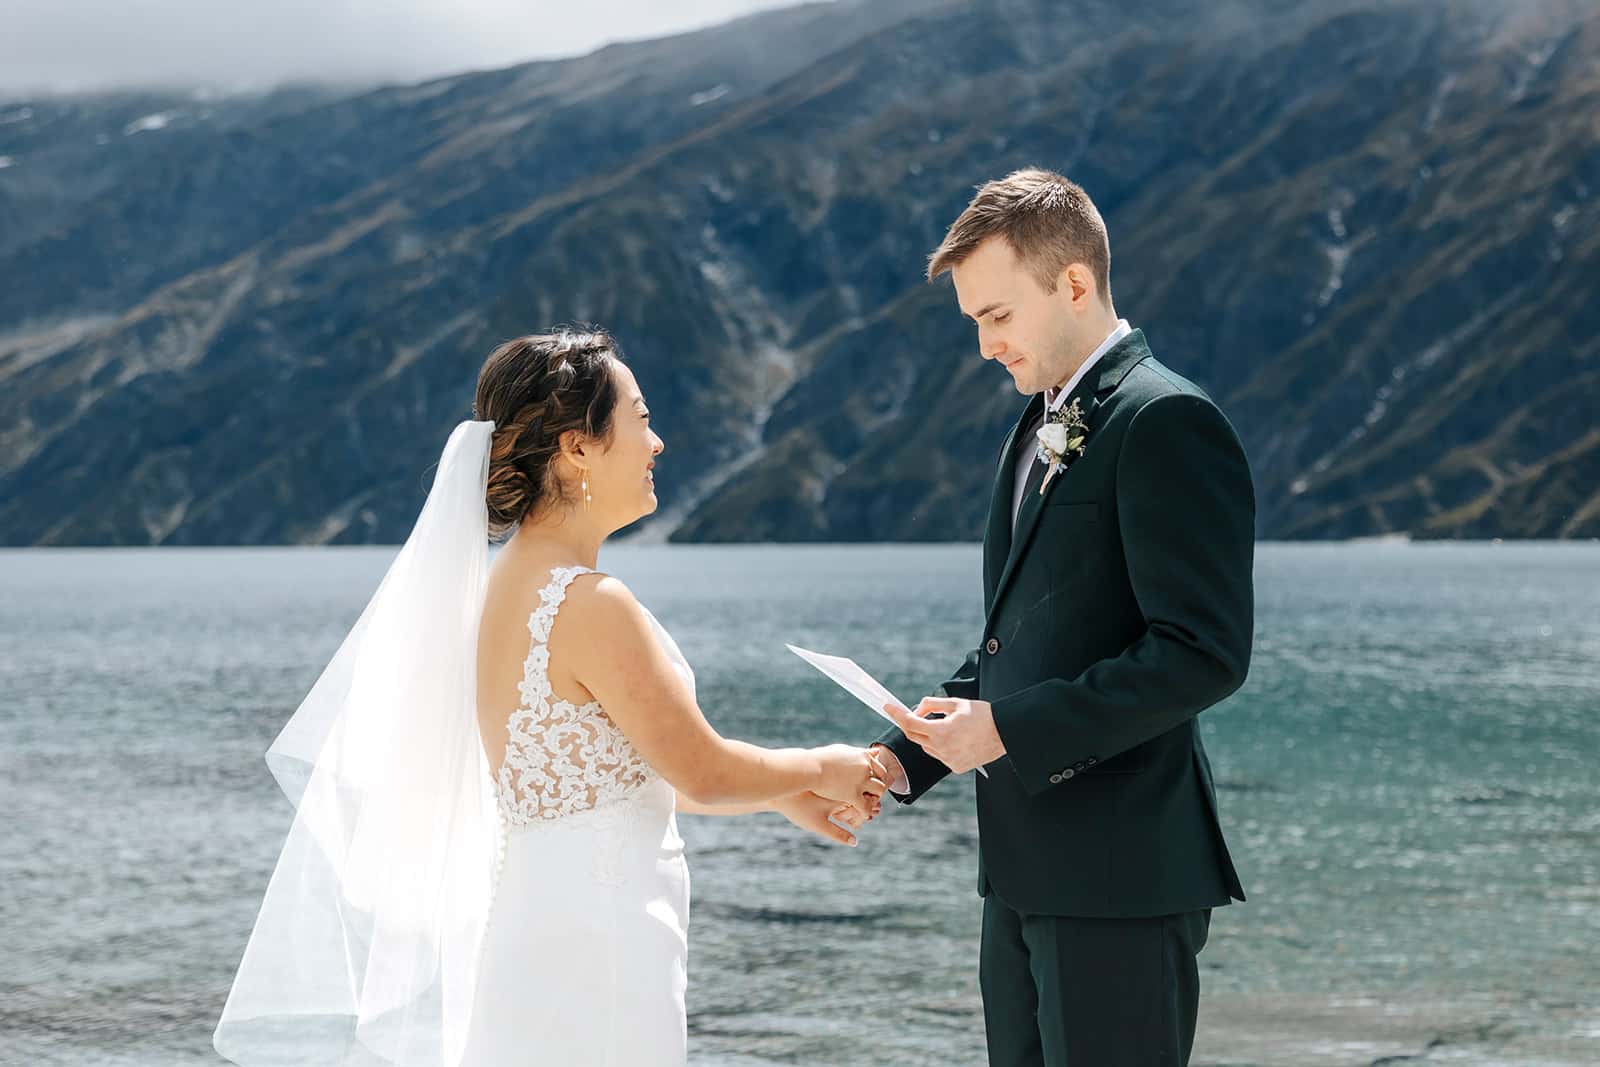 Heli Wedding ceremony at Lochnagar, Queenstown New Zealand